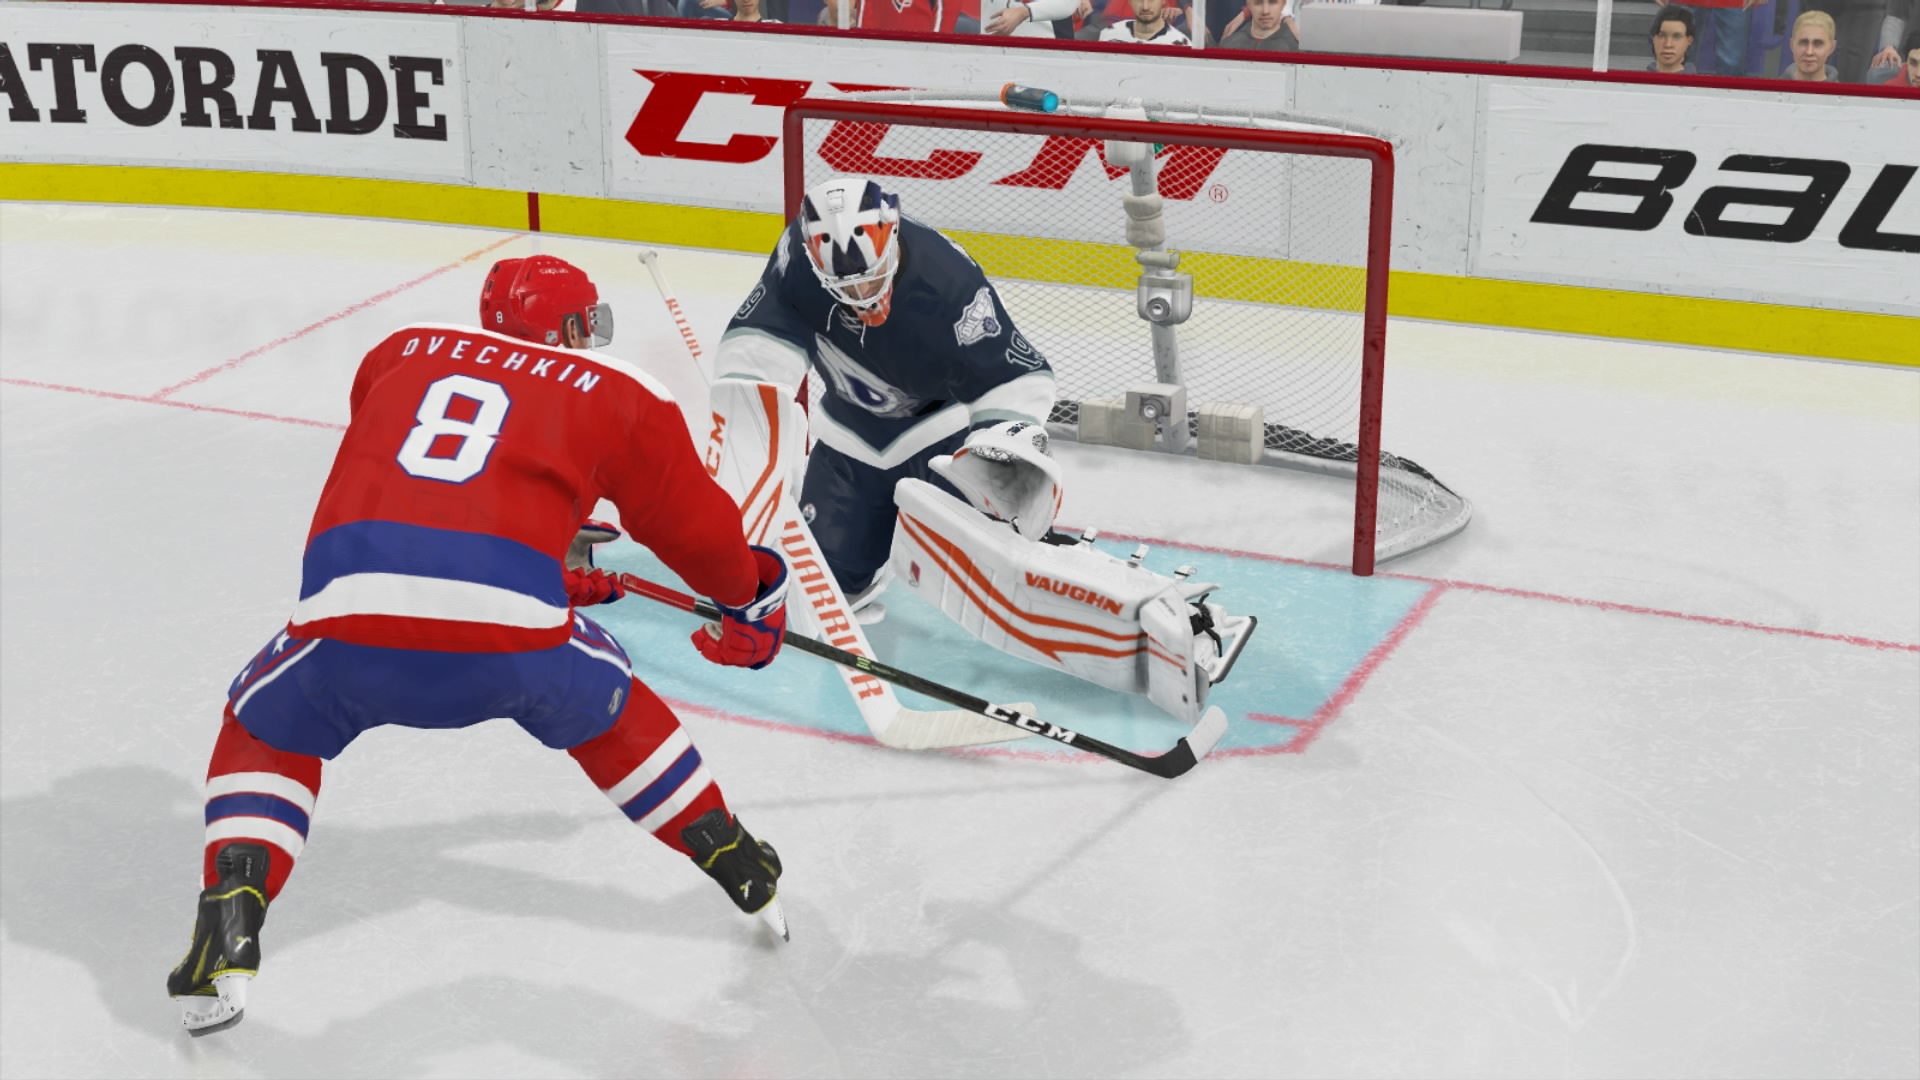 EA NHL 21 Update 1.20 November 5 Skates Out - MP1st